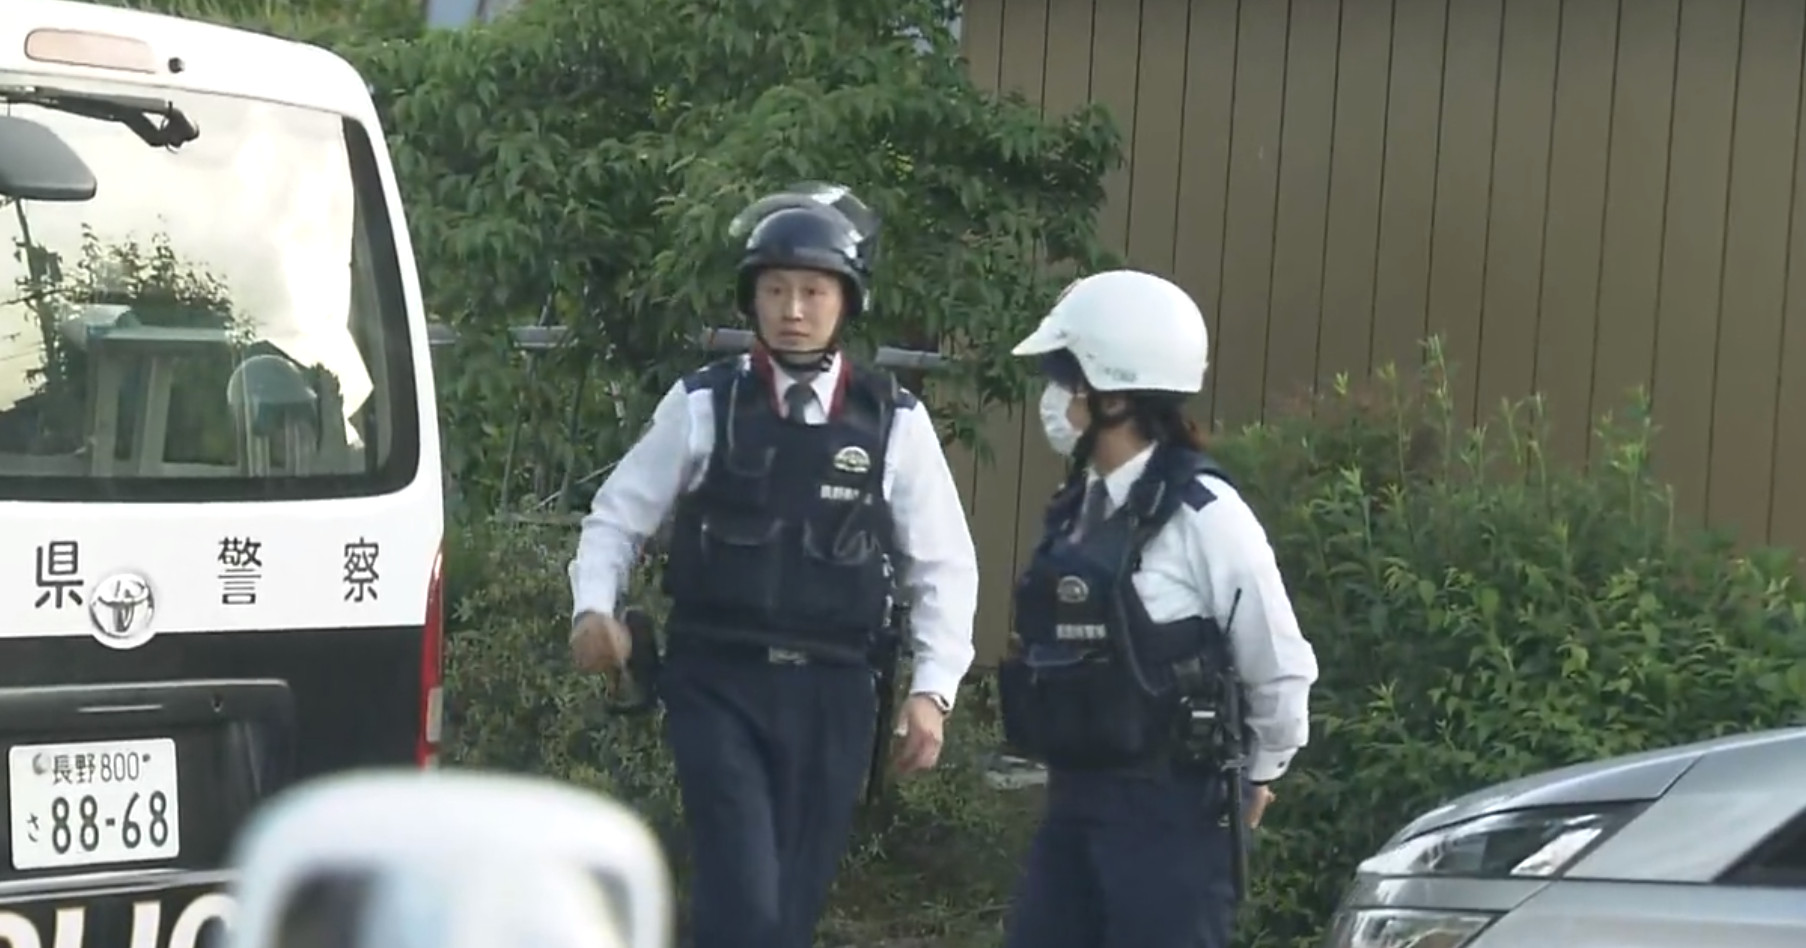 Συναγερμός για περιστατικό με πυροβολισμούς και επίθεση με μαχαίρι στην Ιαπωνία - Αναφορές για τραυματίες